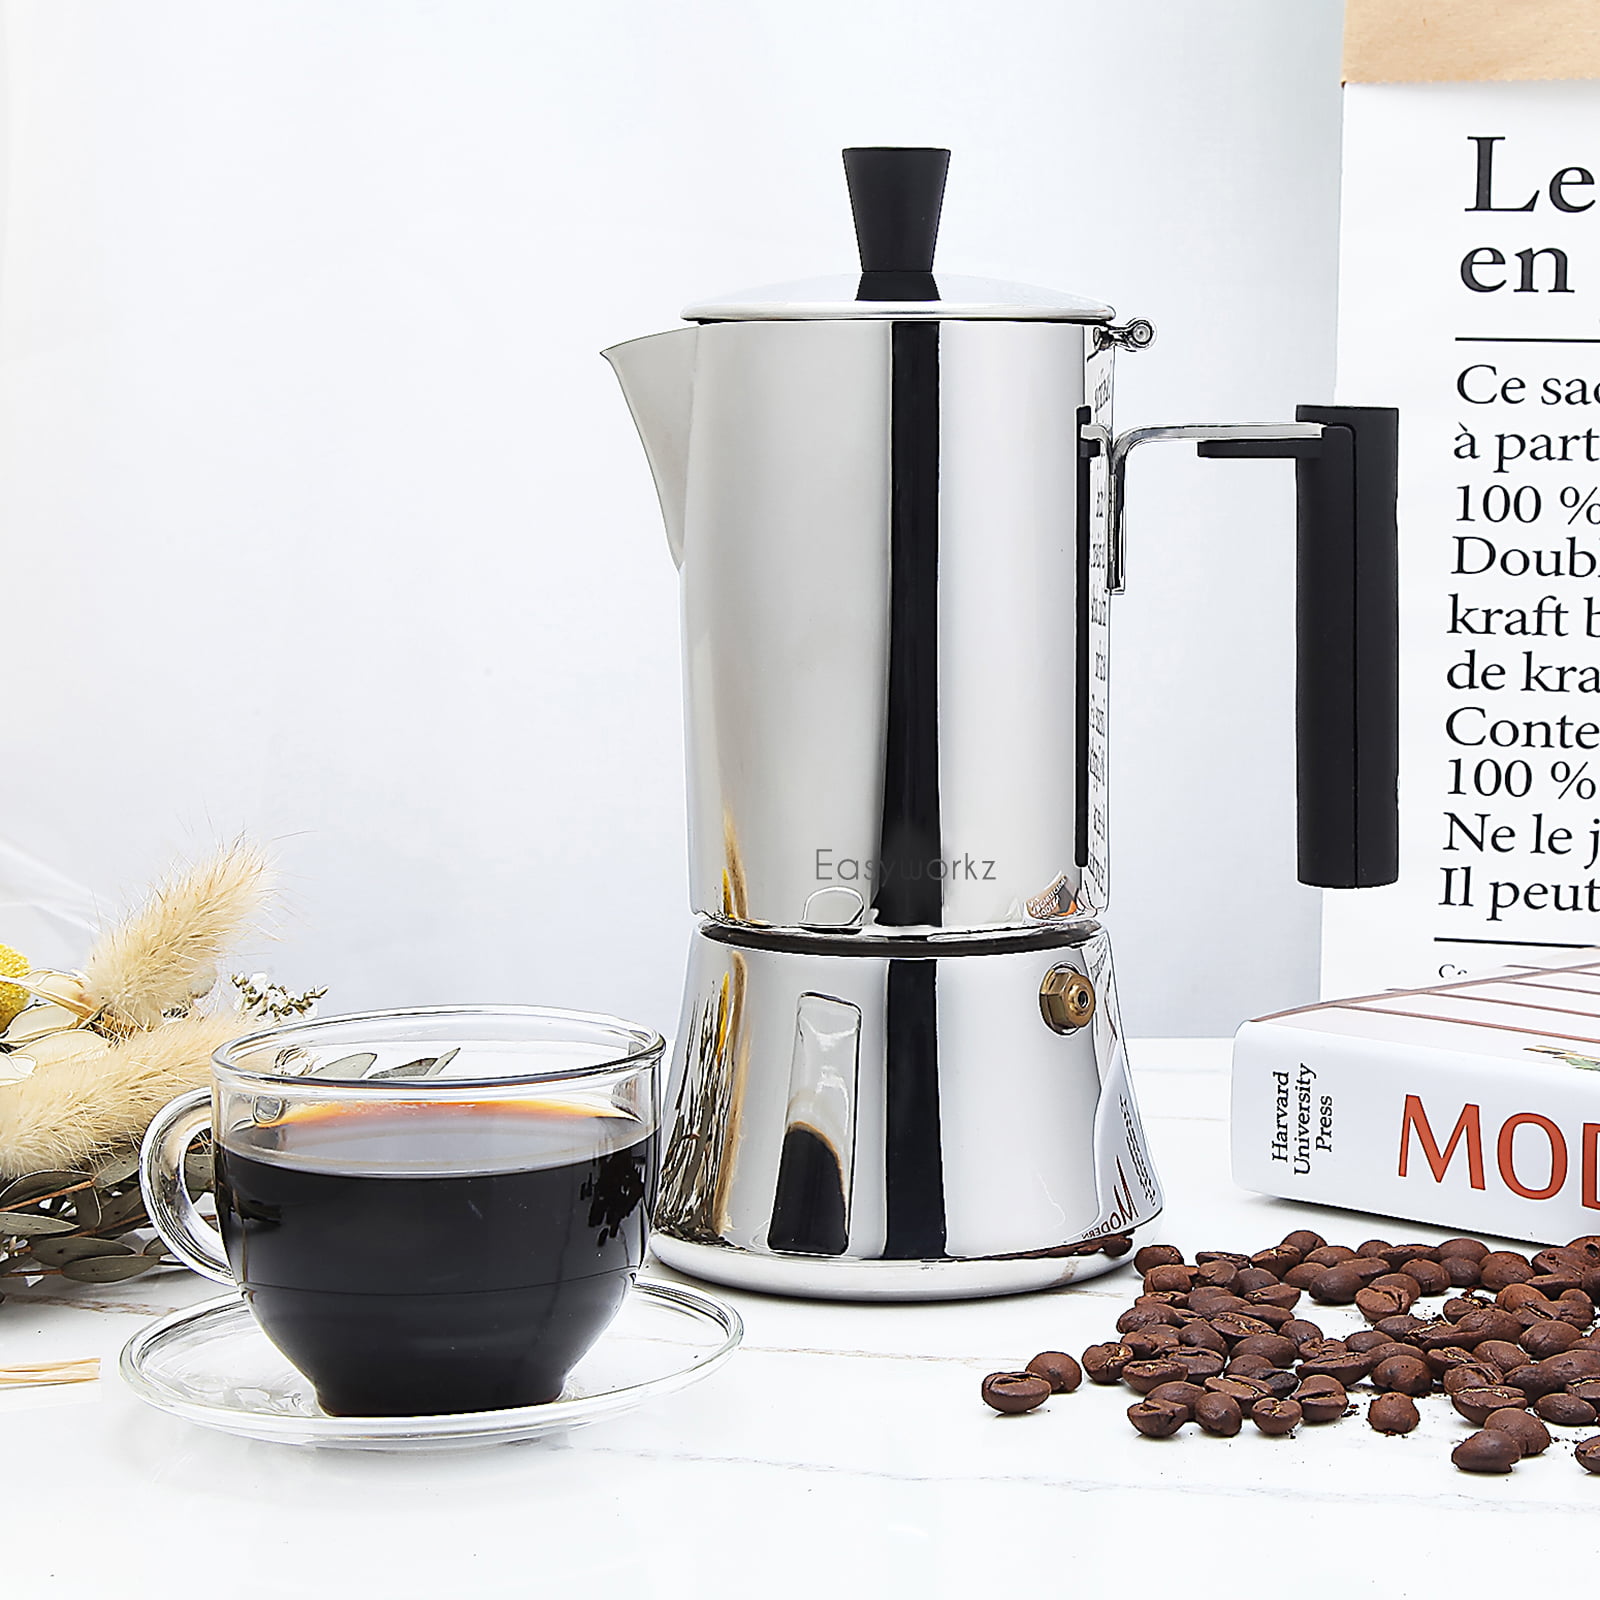 Klassica Espresso Coffee Pot Maker Stove 2 Cups New in Box